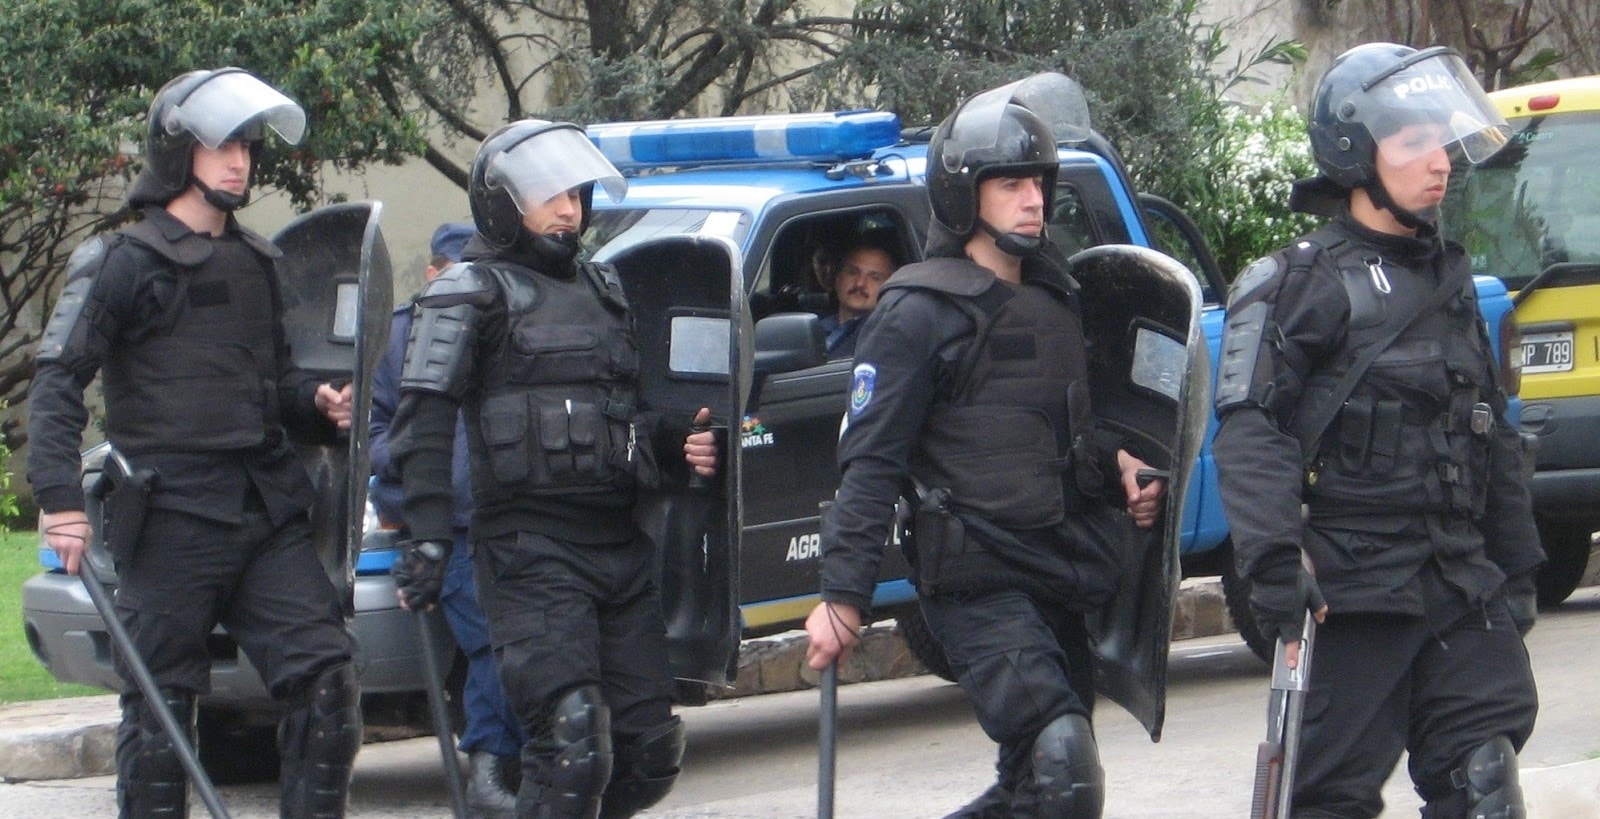 Requisitos para ser policia en Argentina